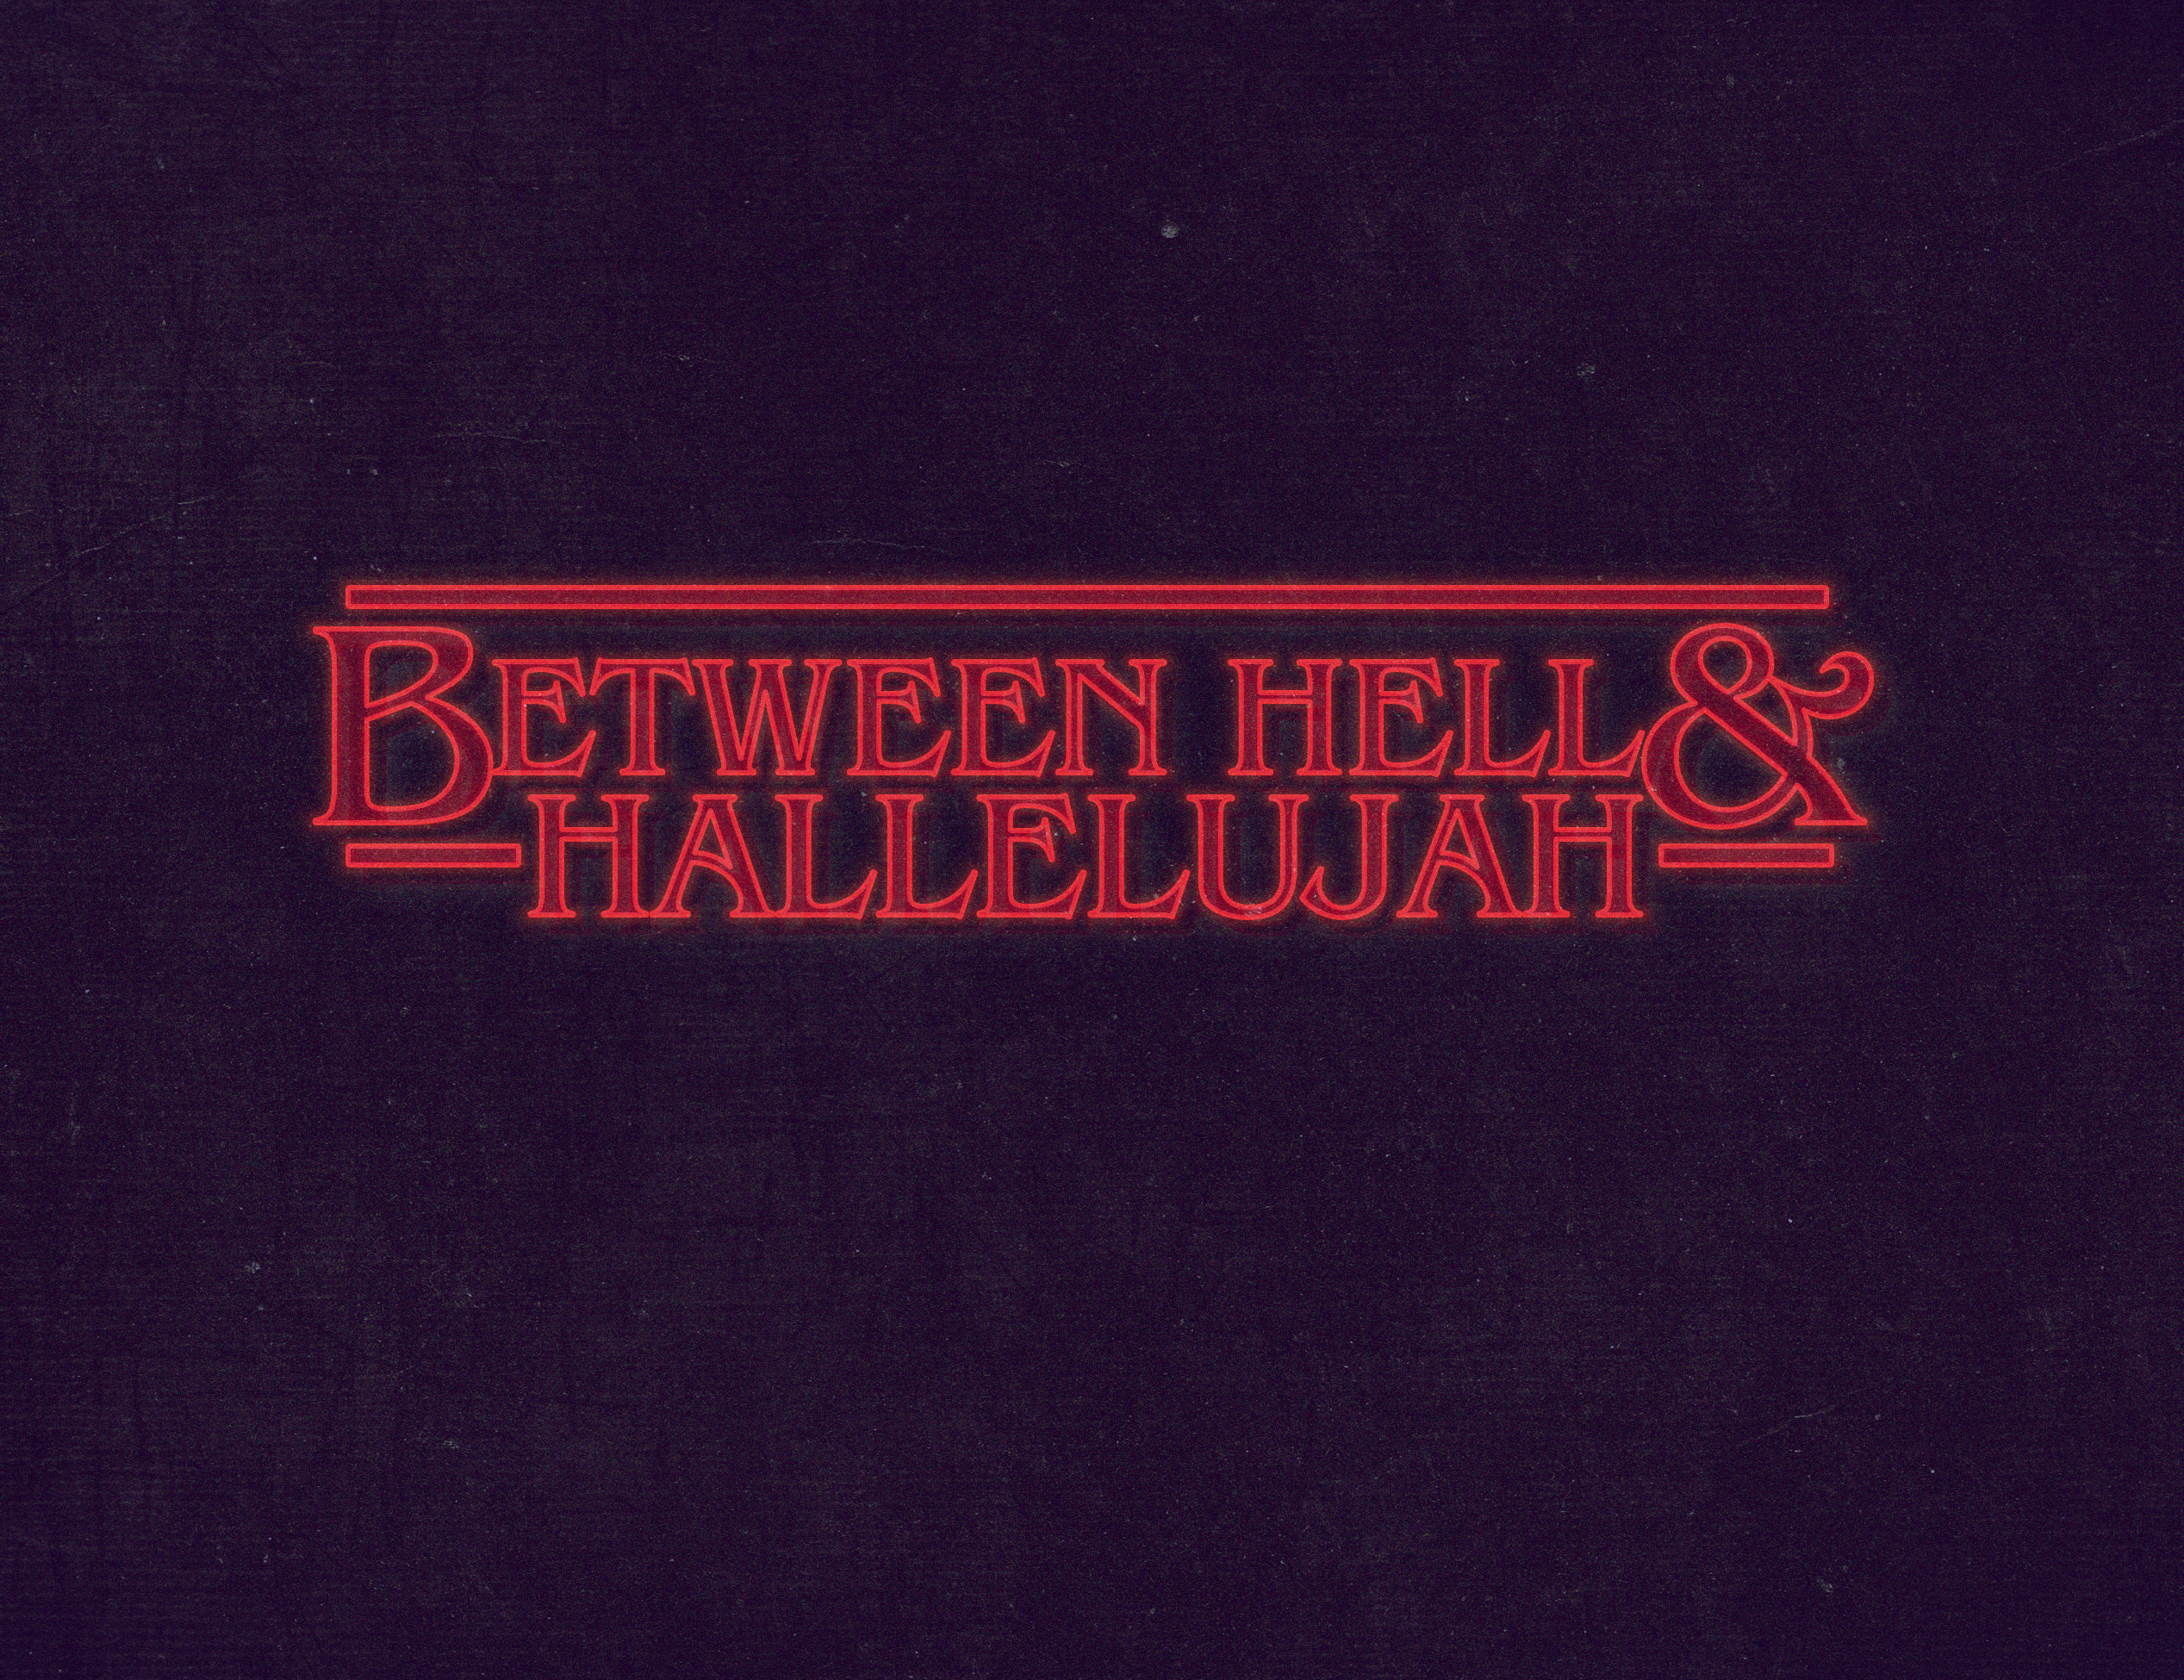 Between Hell & Hallelujah